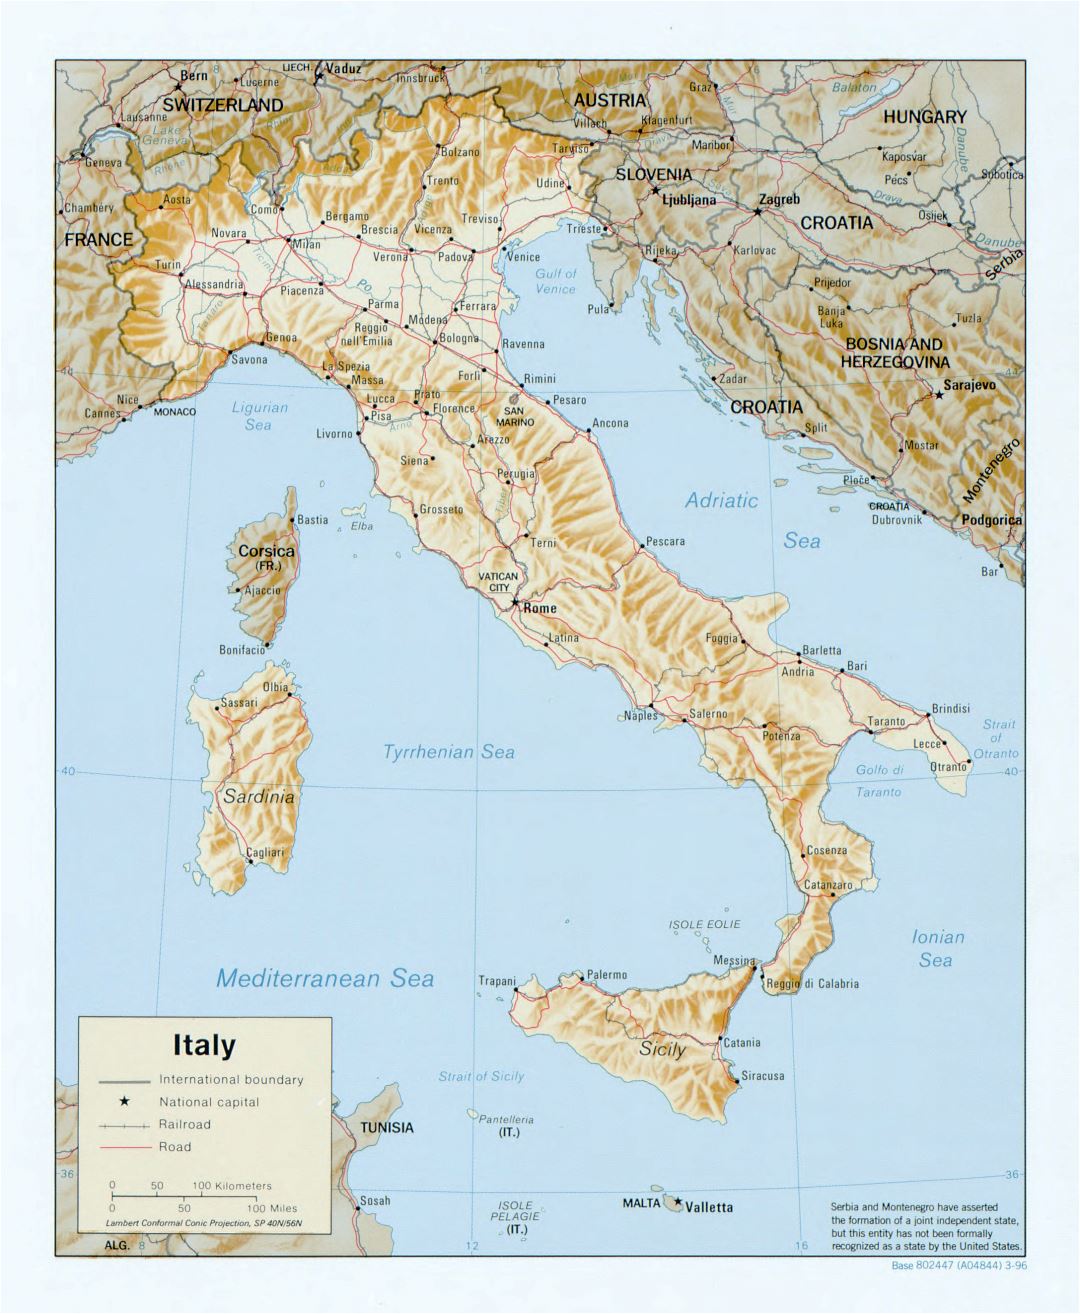 Mapa político a gran escala de Italia, con alivio, carreteras, vías férreas y las principales ciudades - 1996